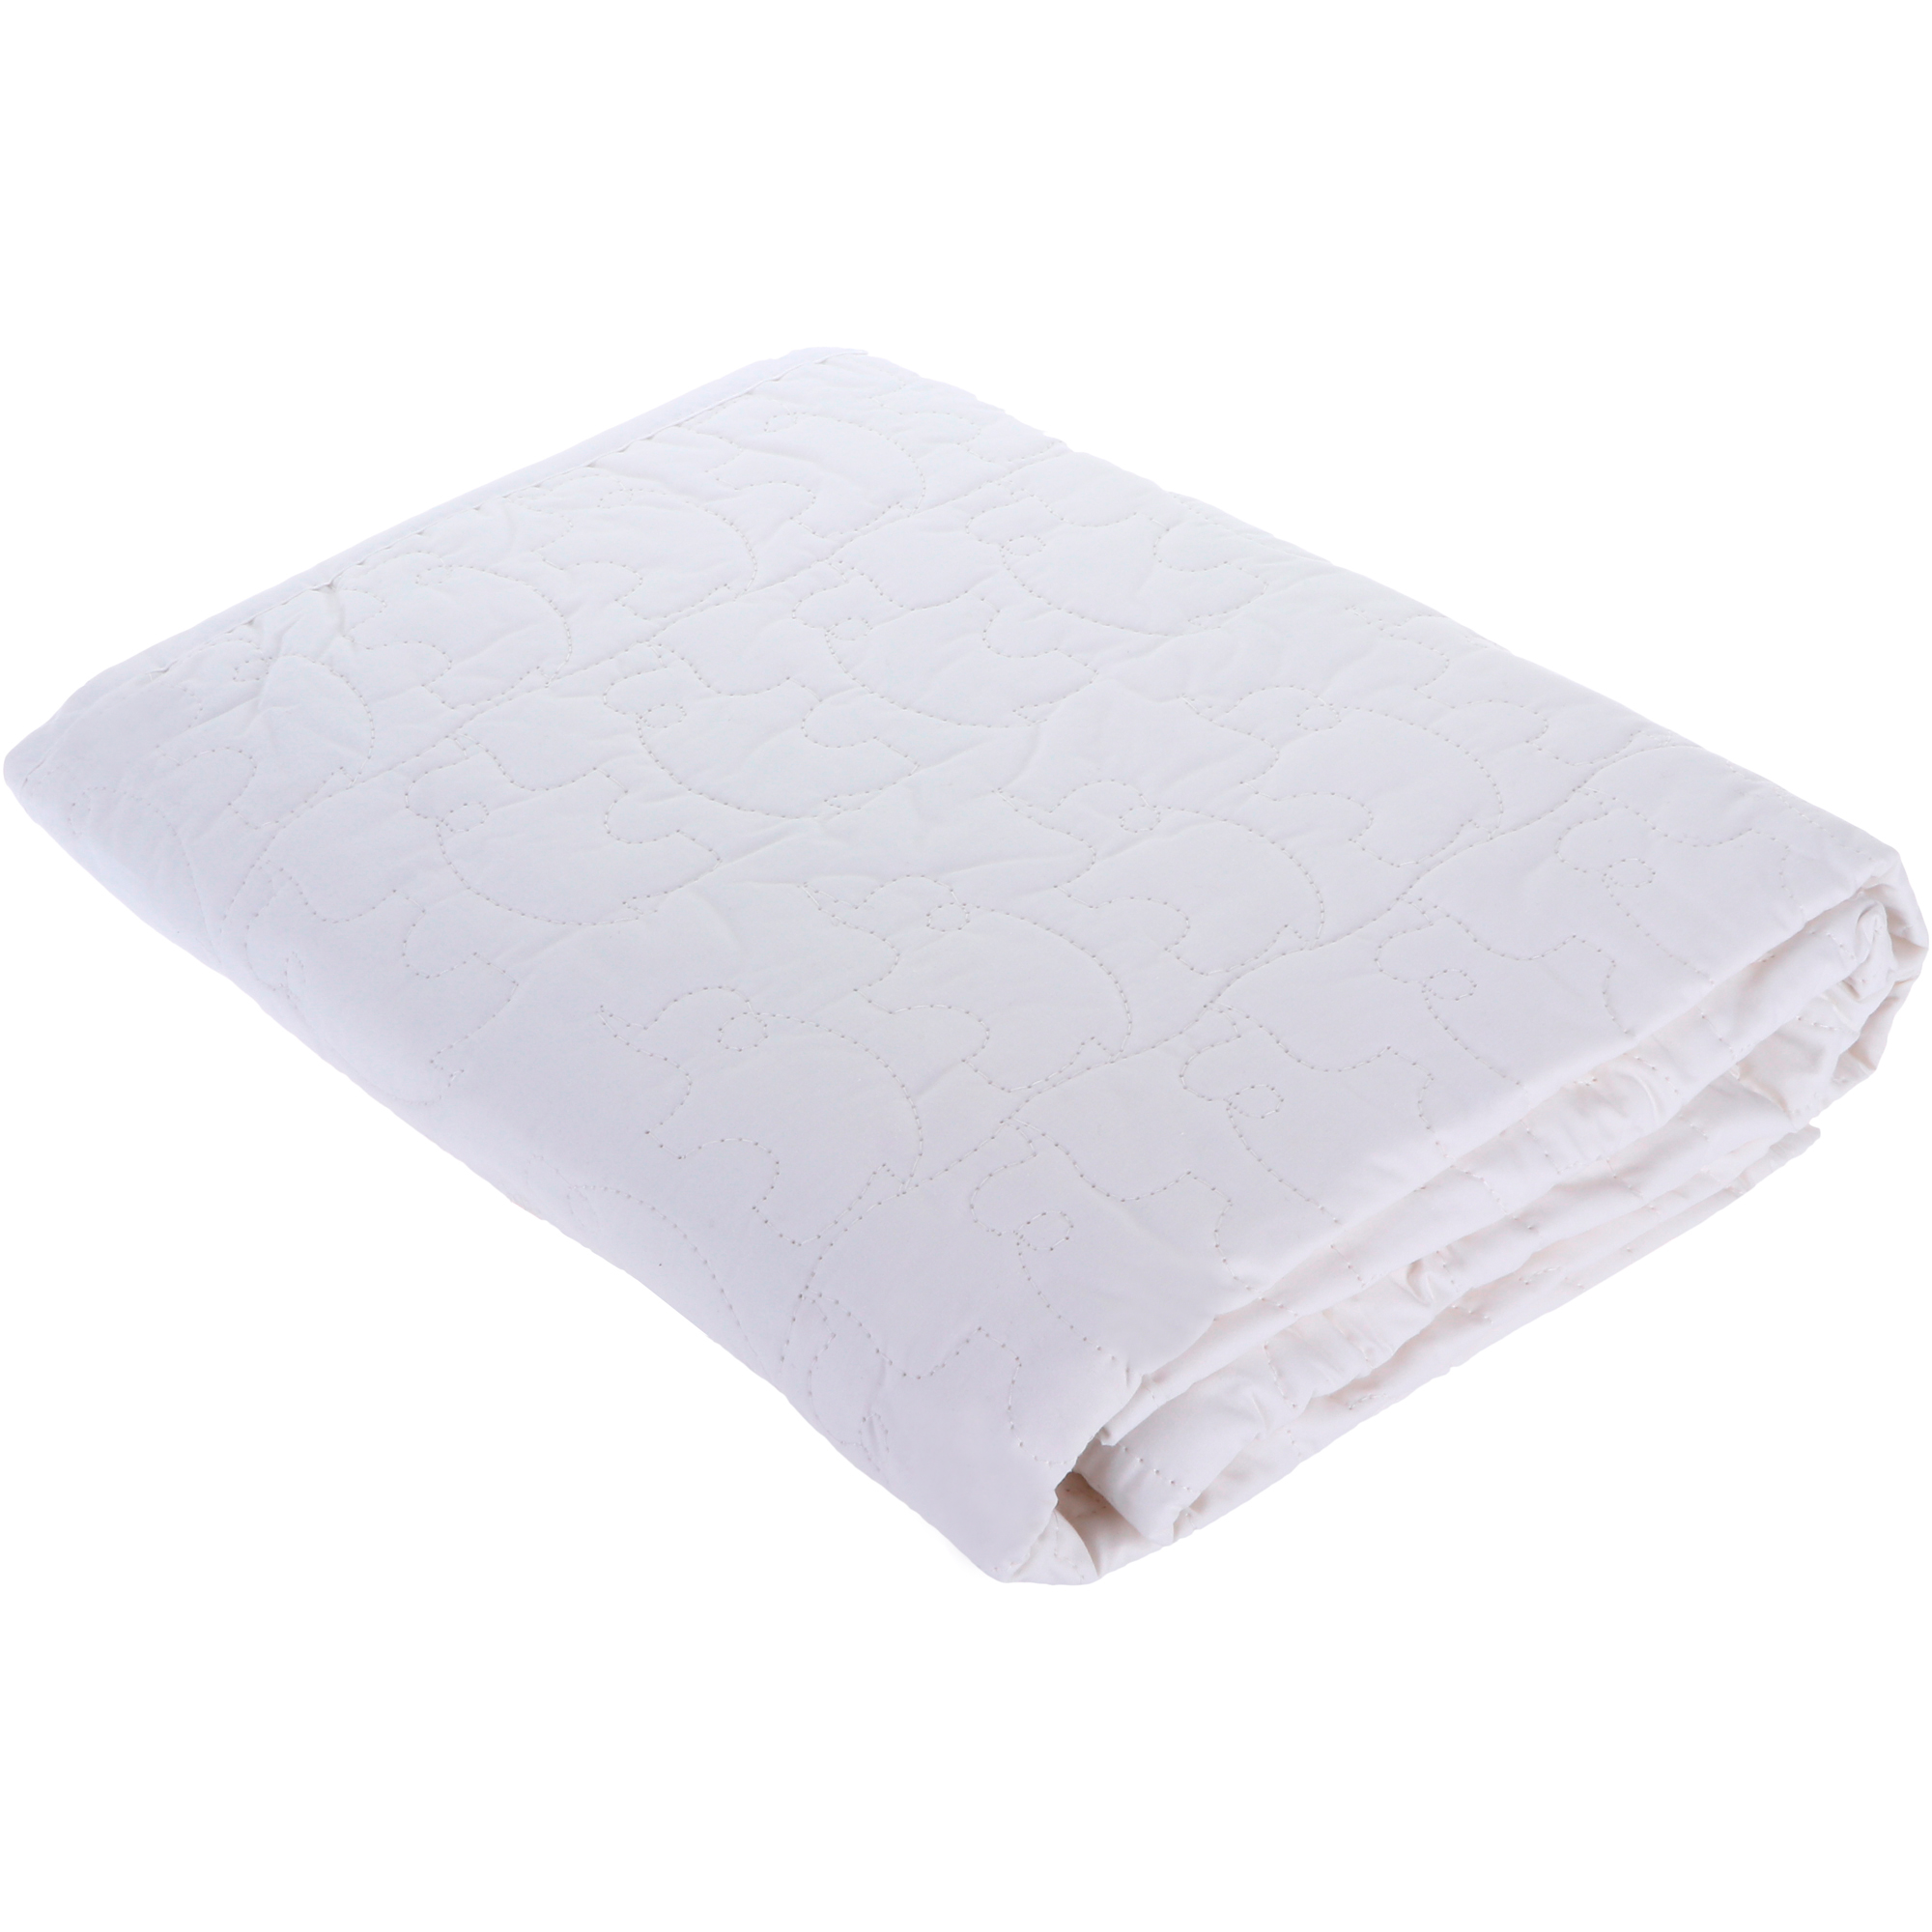 Детское одеяло Вонне-траум Baby Comfort белое 120х150 см